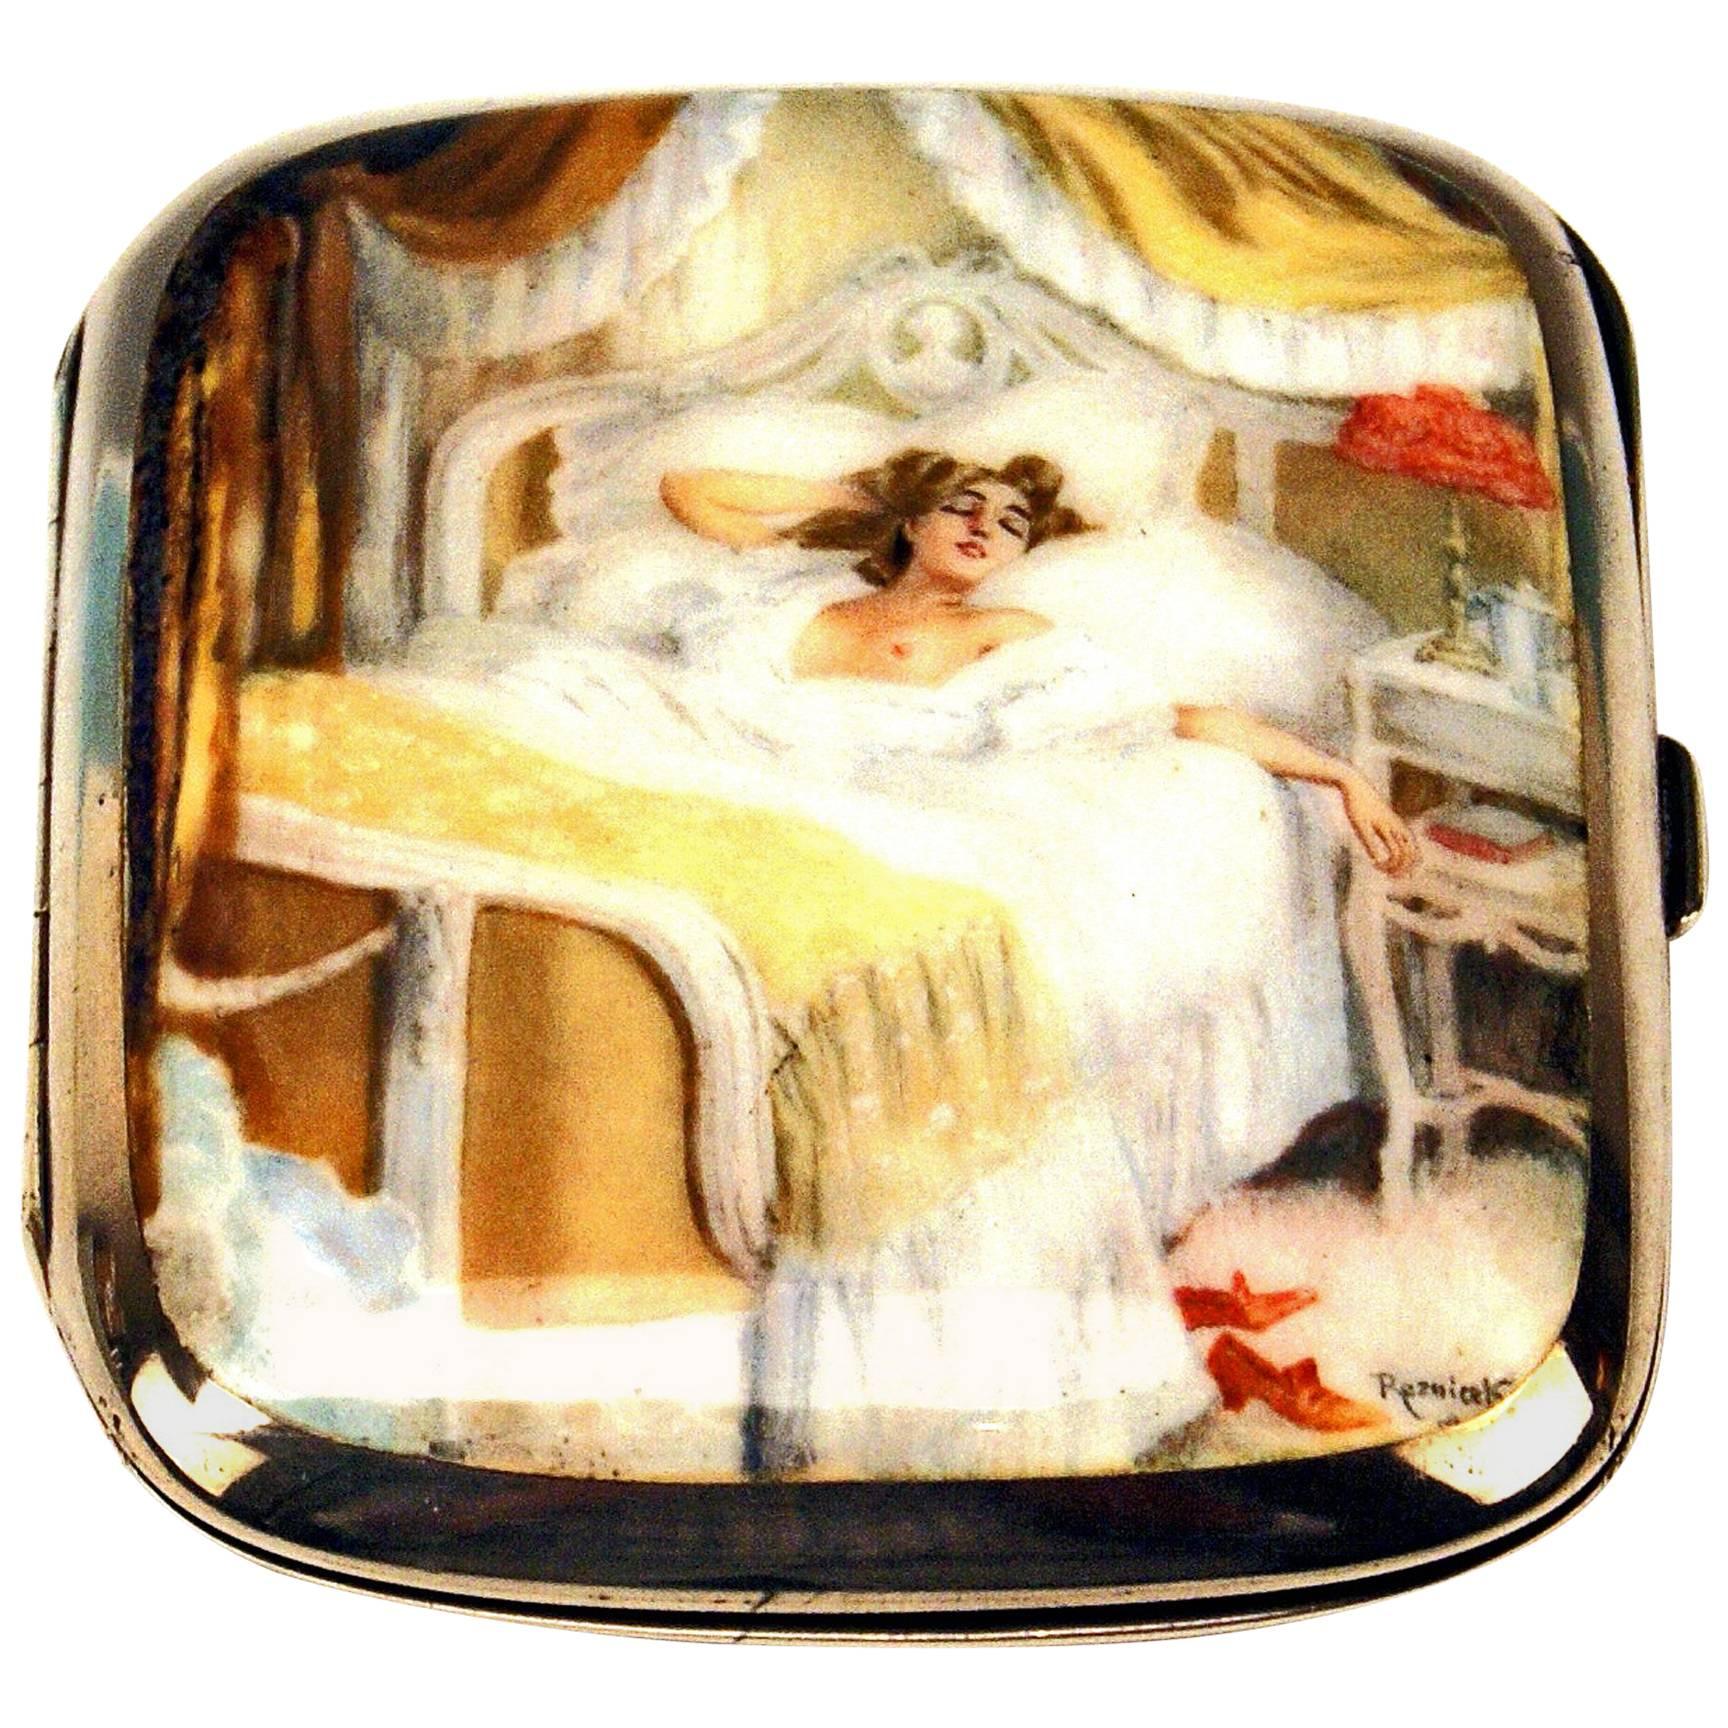 Jugendstil-Zigarettenetui aus Silber mit erotischem Emaille-Gemälde von F. Reznicek